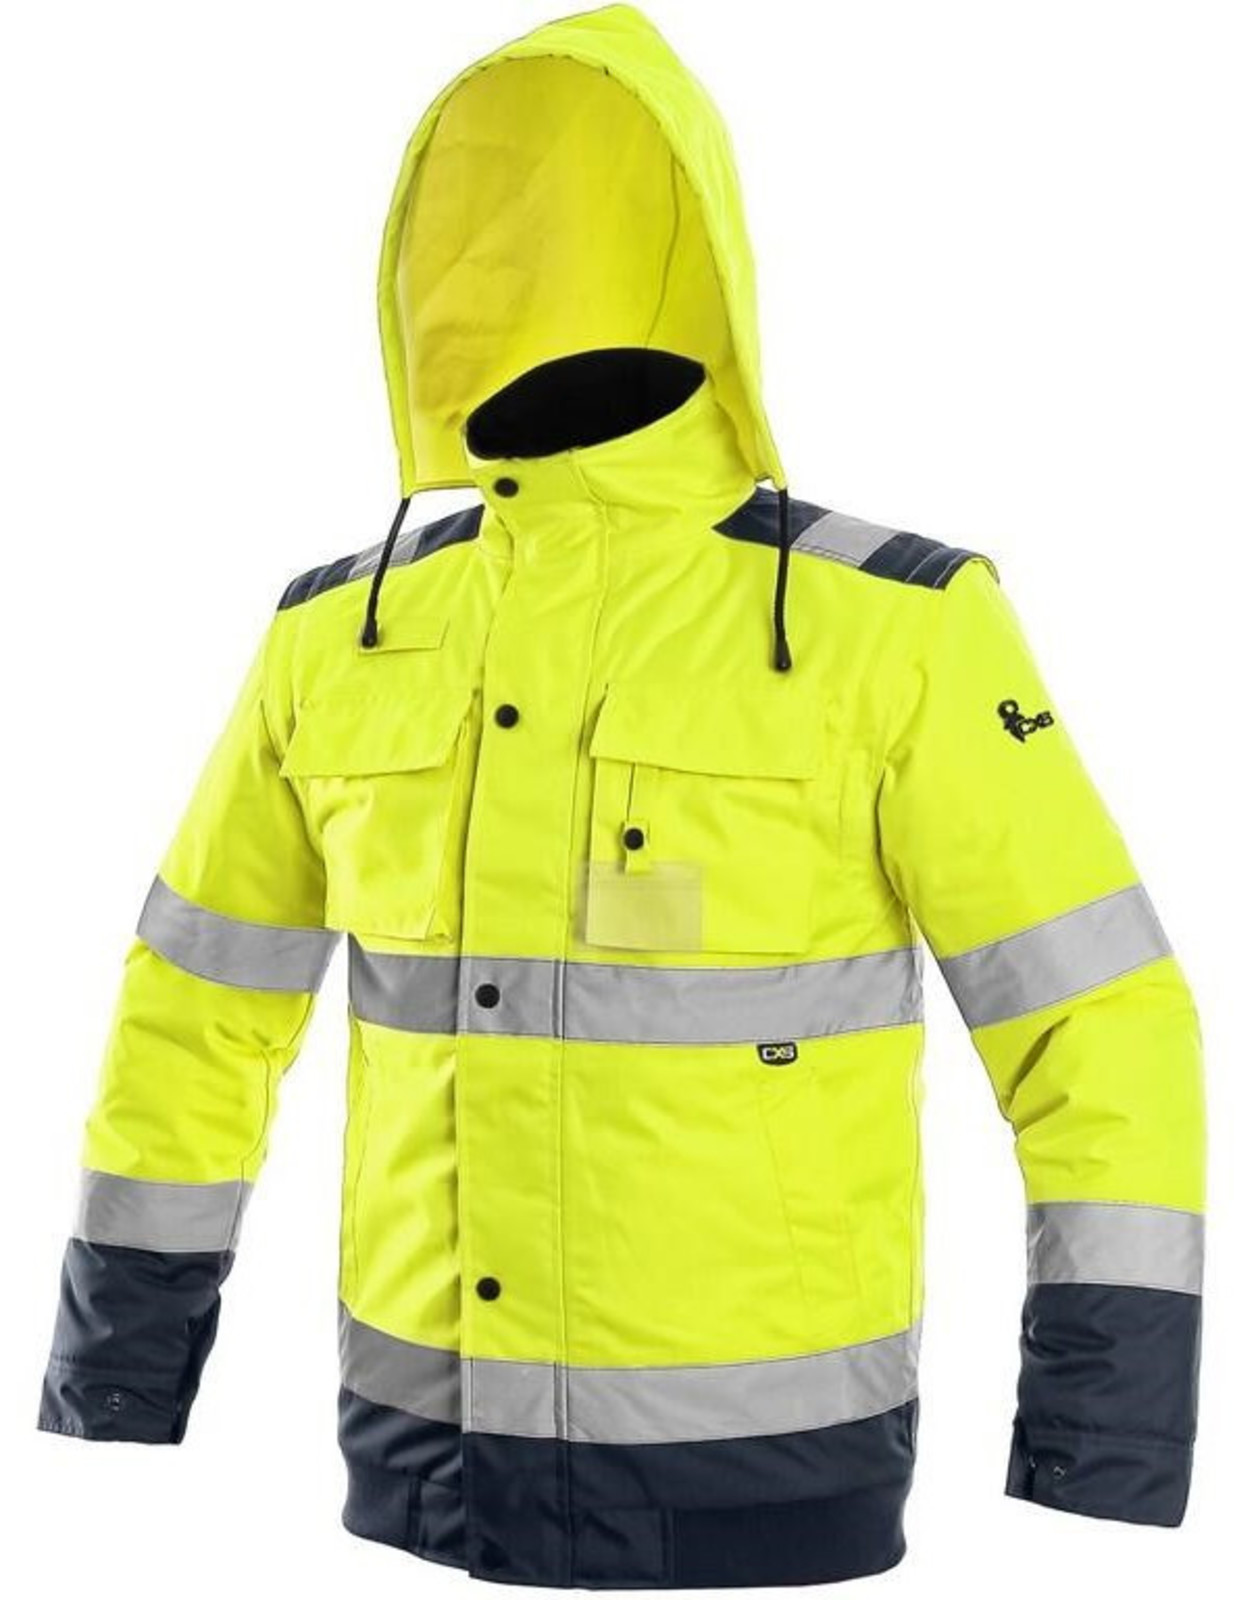 Zimná reflexná bunda CXS Luton 2v1 - veľkosť: M, farba: žltá/navy